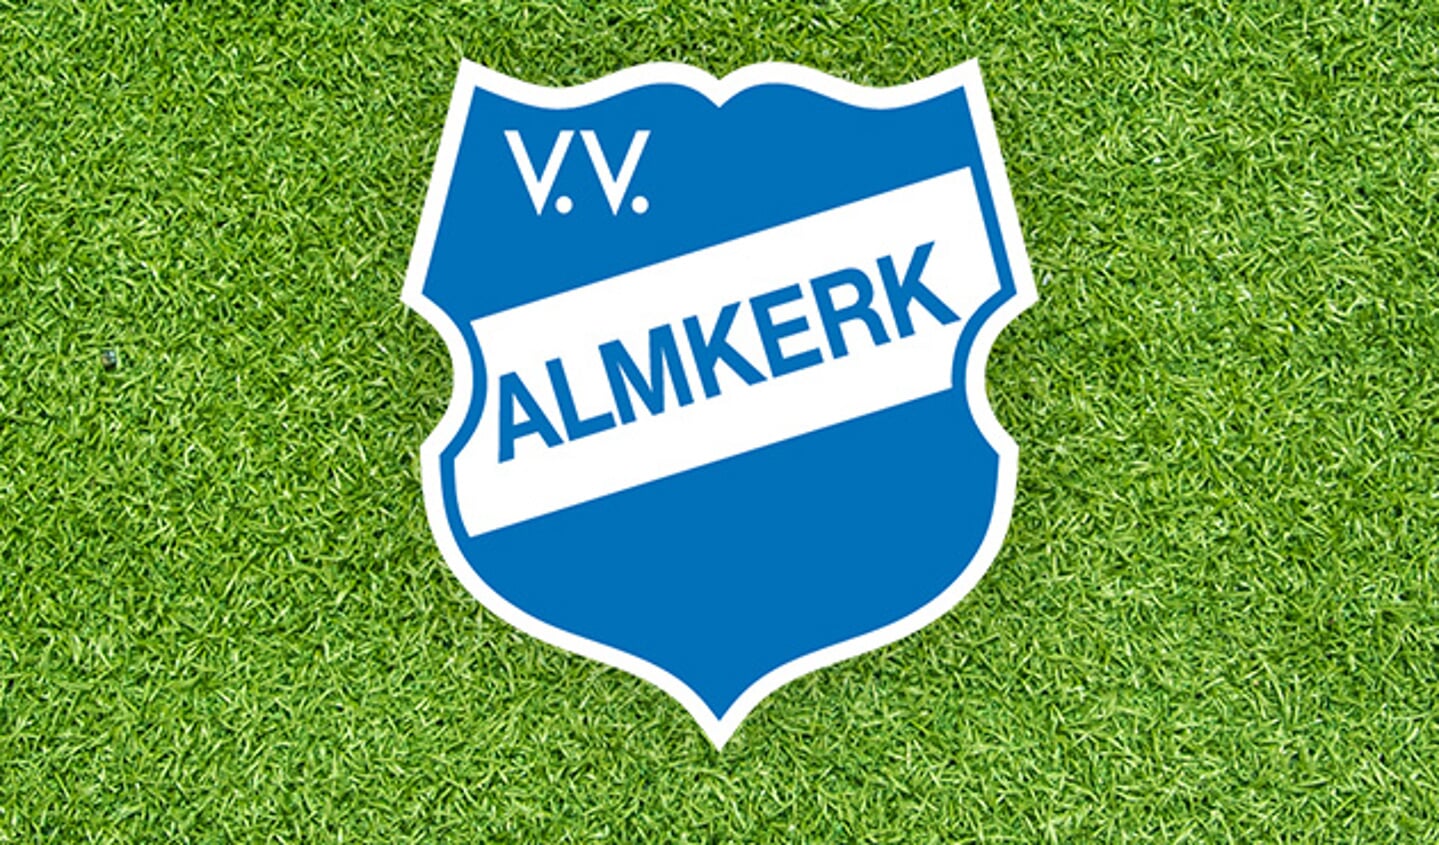 Vacature: vv Almkerk zoekt trainer/coach voor JO19-1